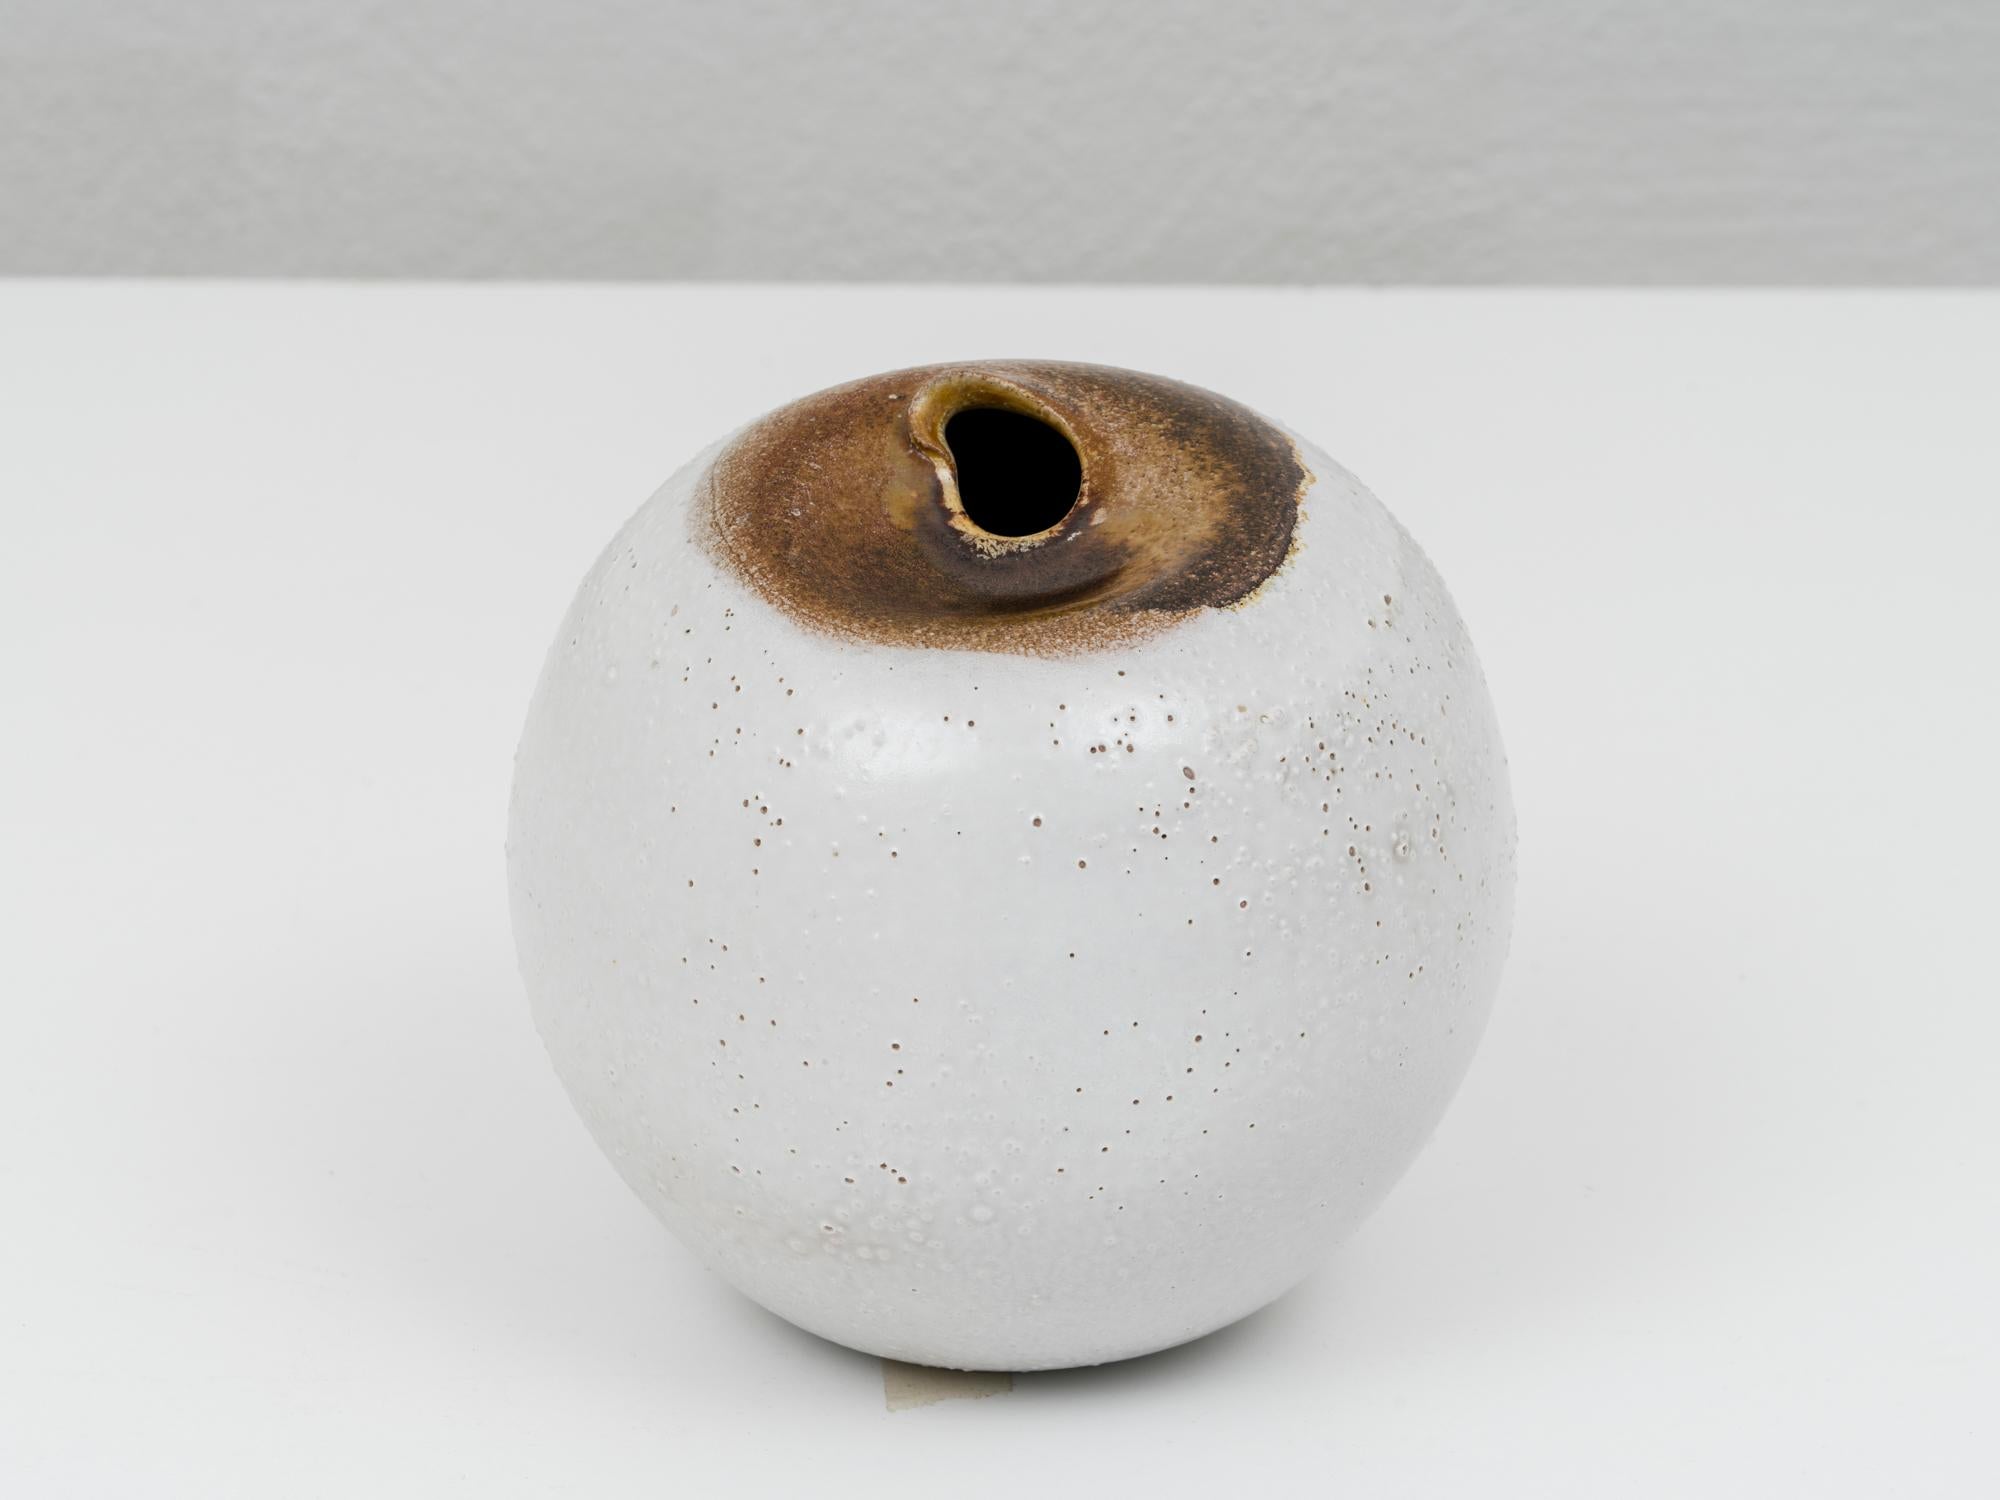 Postmoderne Keramikvase von Pino Castagna, in Weiß- und Brauntönen, mit taktiler Verarbeitung und absichtlich erzeugten Kochblasen. Dieses Stück wurde in den 1990er Jahren im Labor des Künstlers in Costermano, in der Nähe des Gardasees, hergestellt.